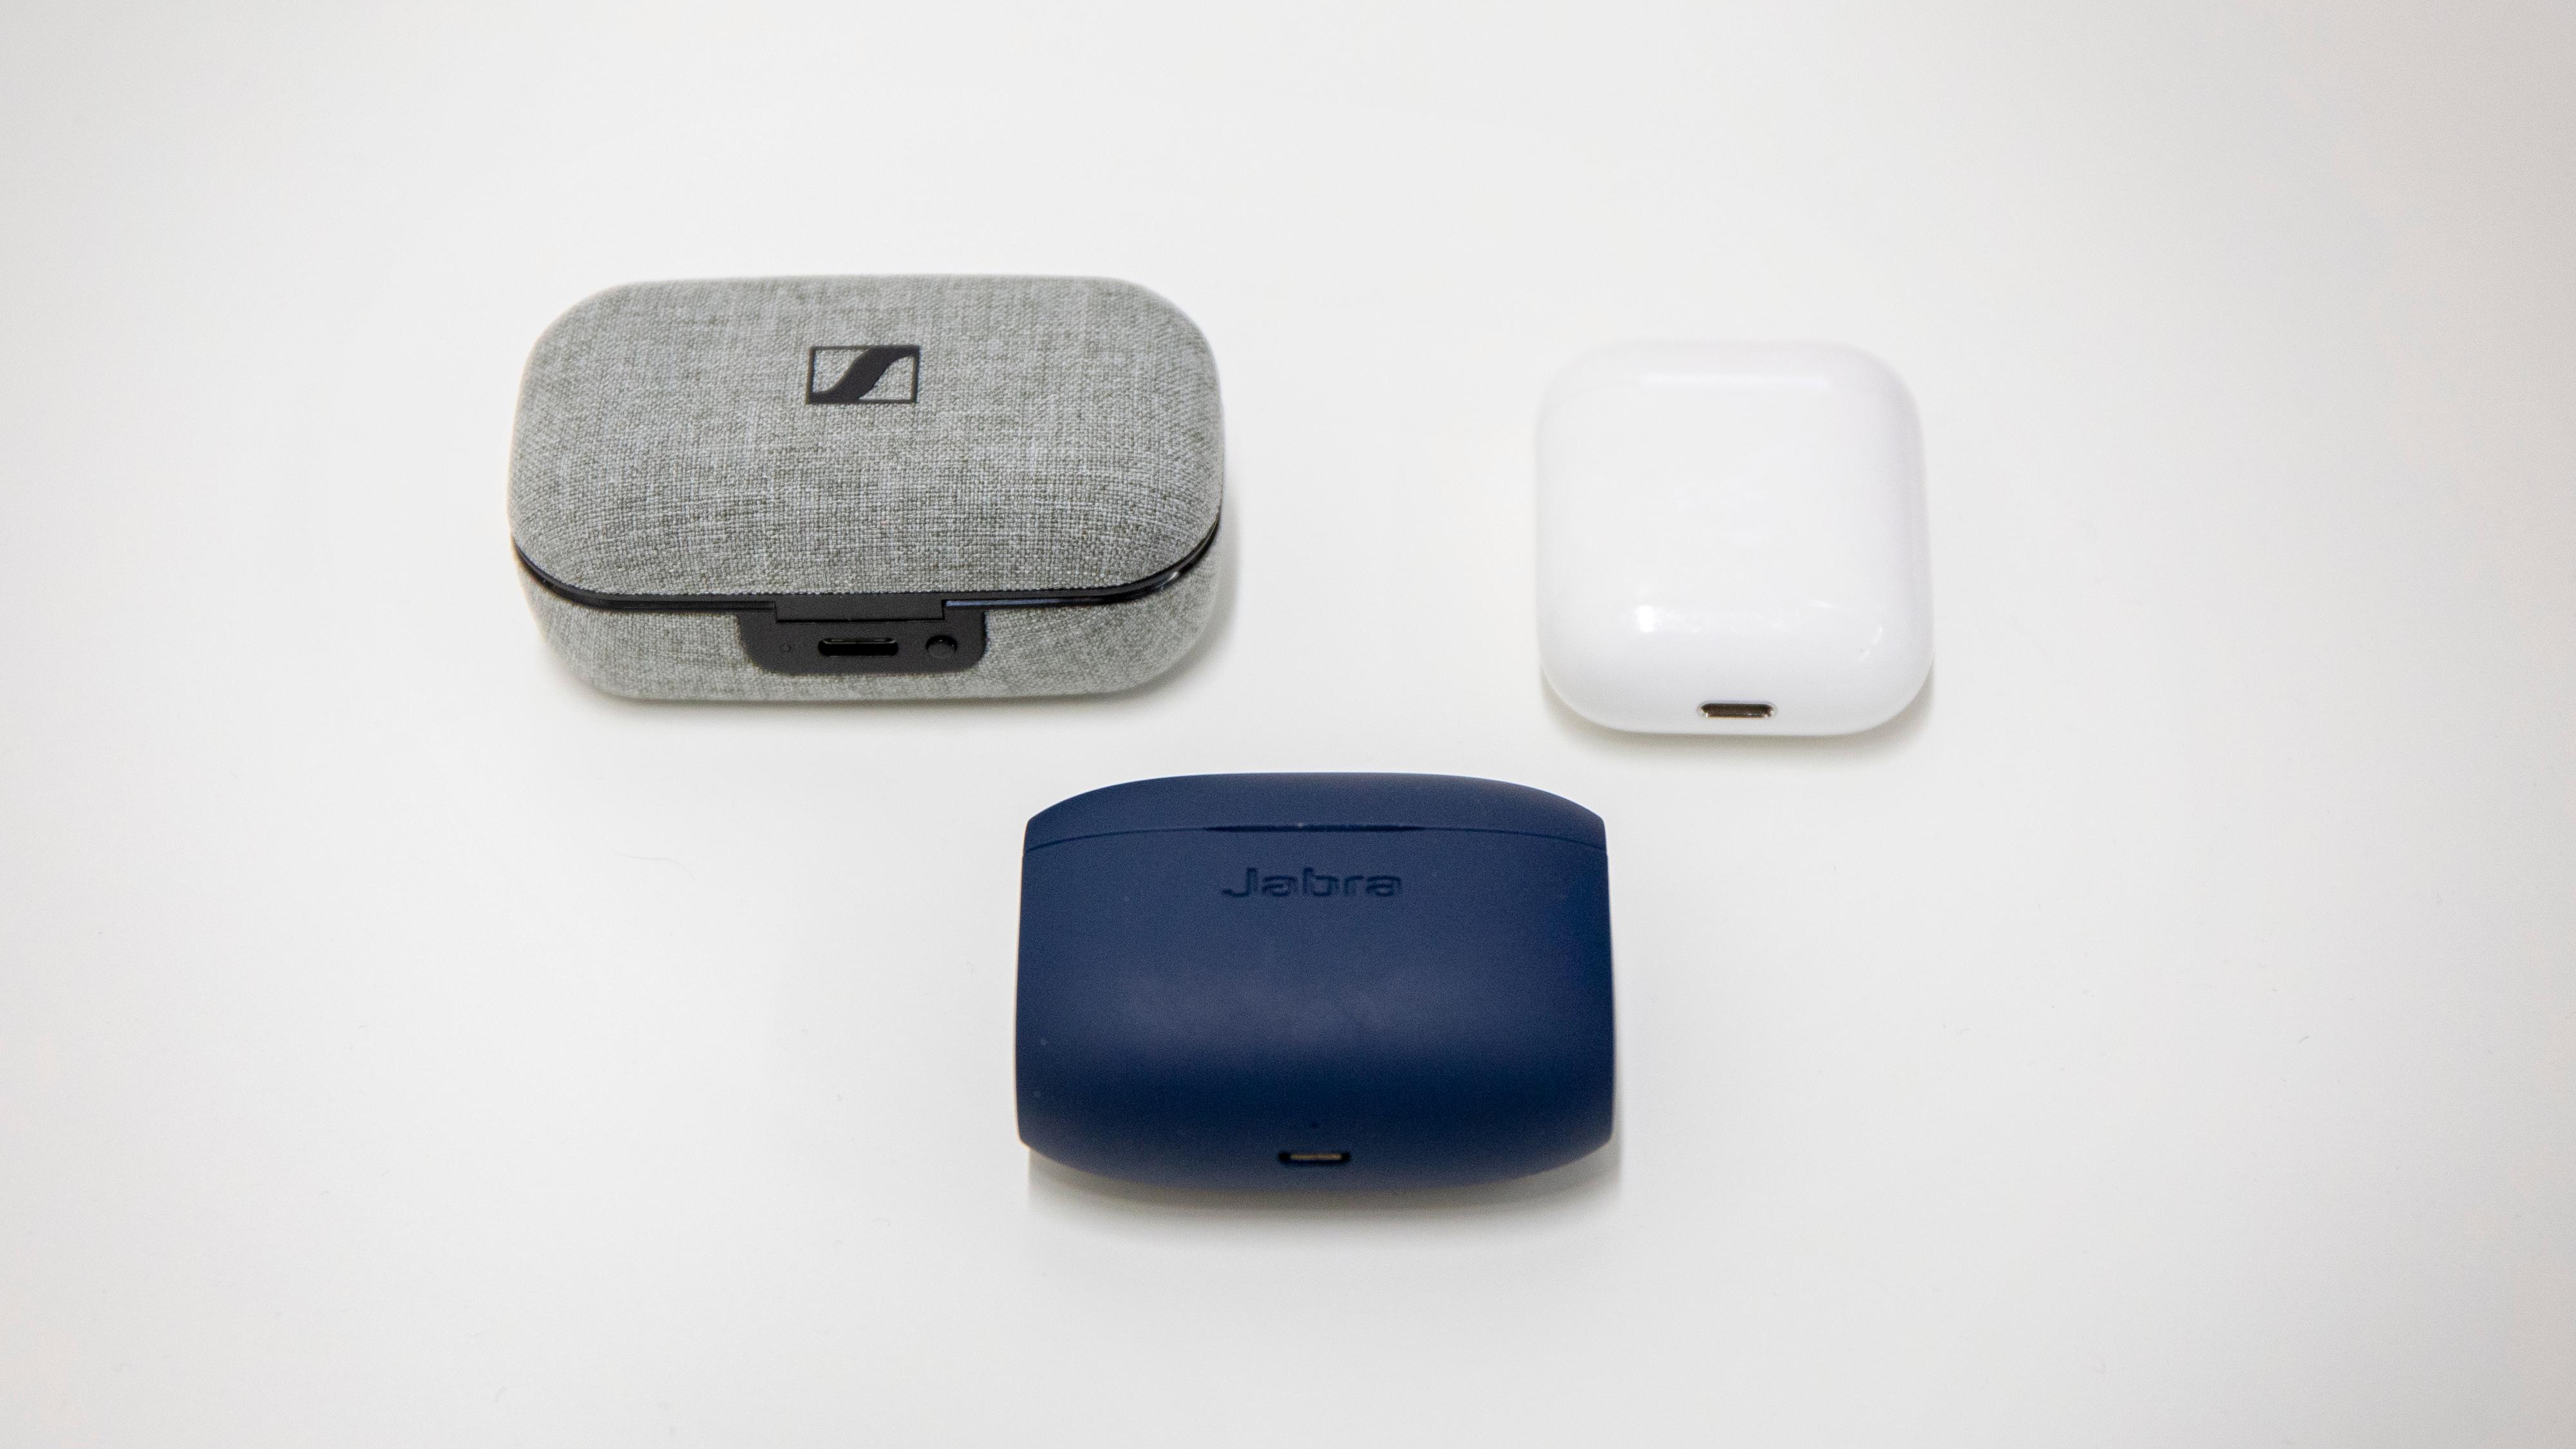 Sennheiser-etuiet er hakket større enn flere av konkurrentene, her Jabra (blått) og Apple.